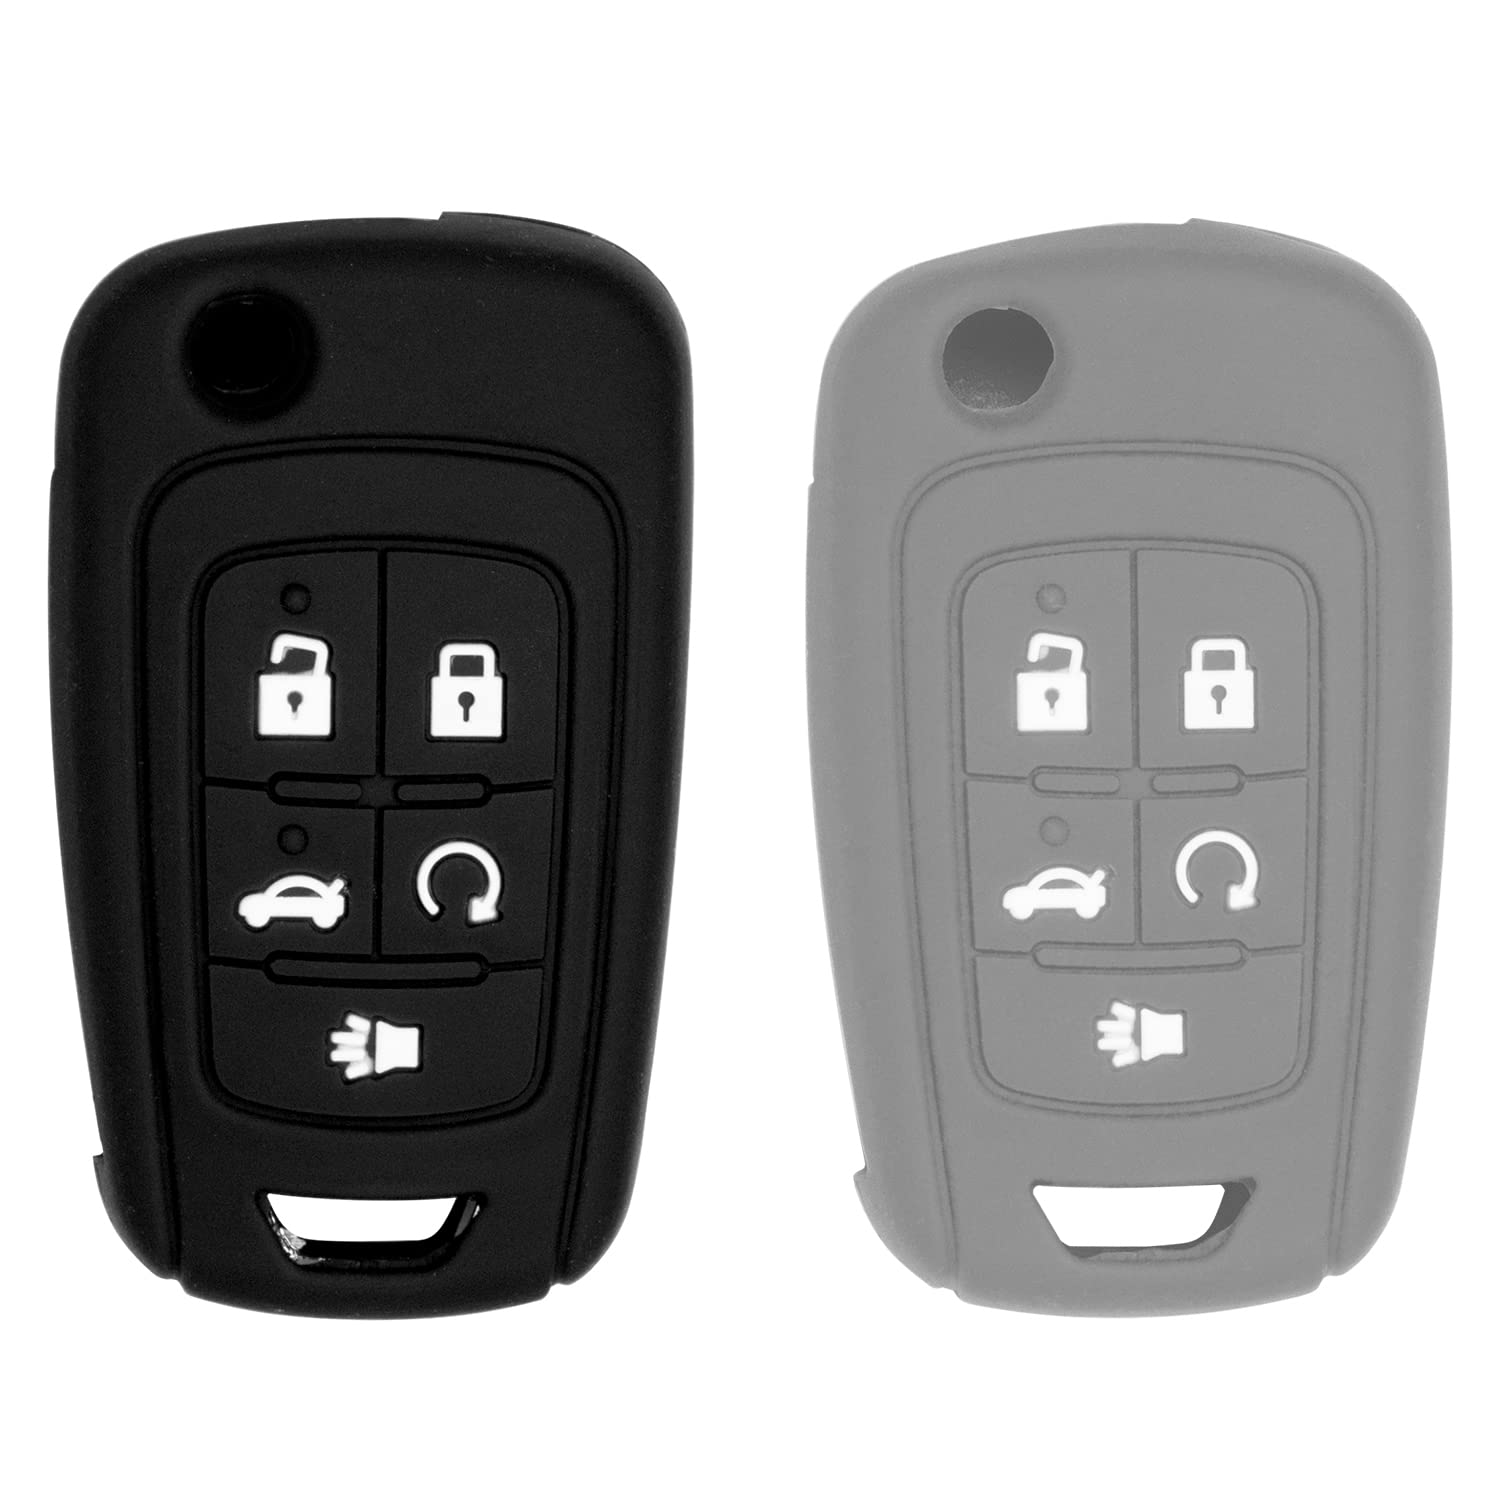 Silicone case for Flip Key 5 Button for Cruze Equinox Impala Malibu Sonic Terrain Lacrosse Regal Verano Encore Allure (Black and Grey)